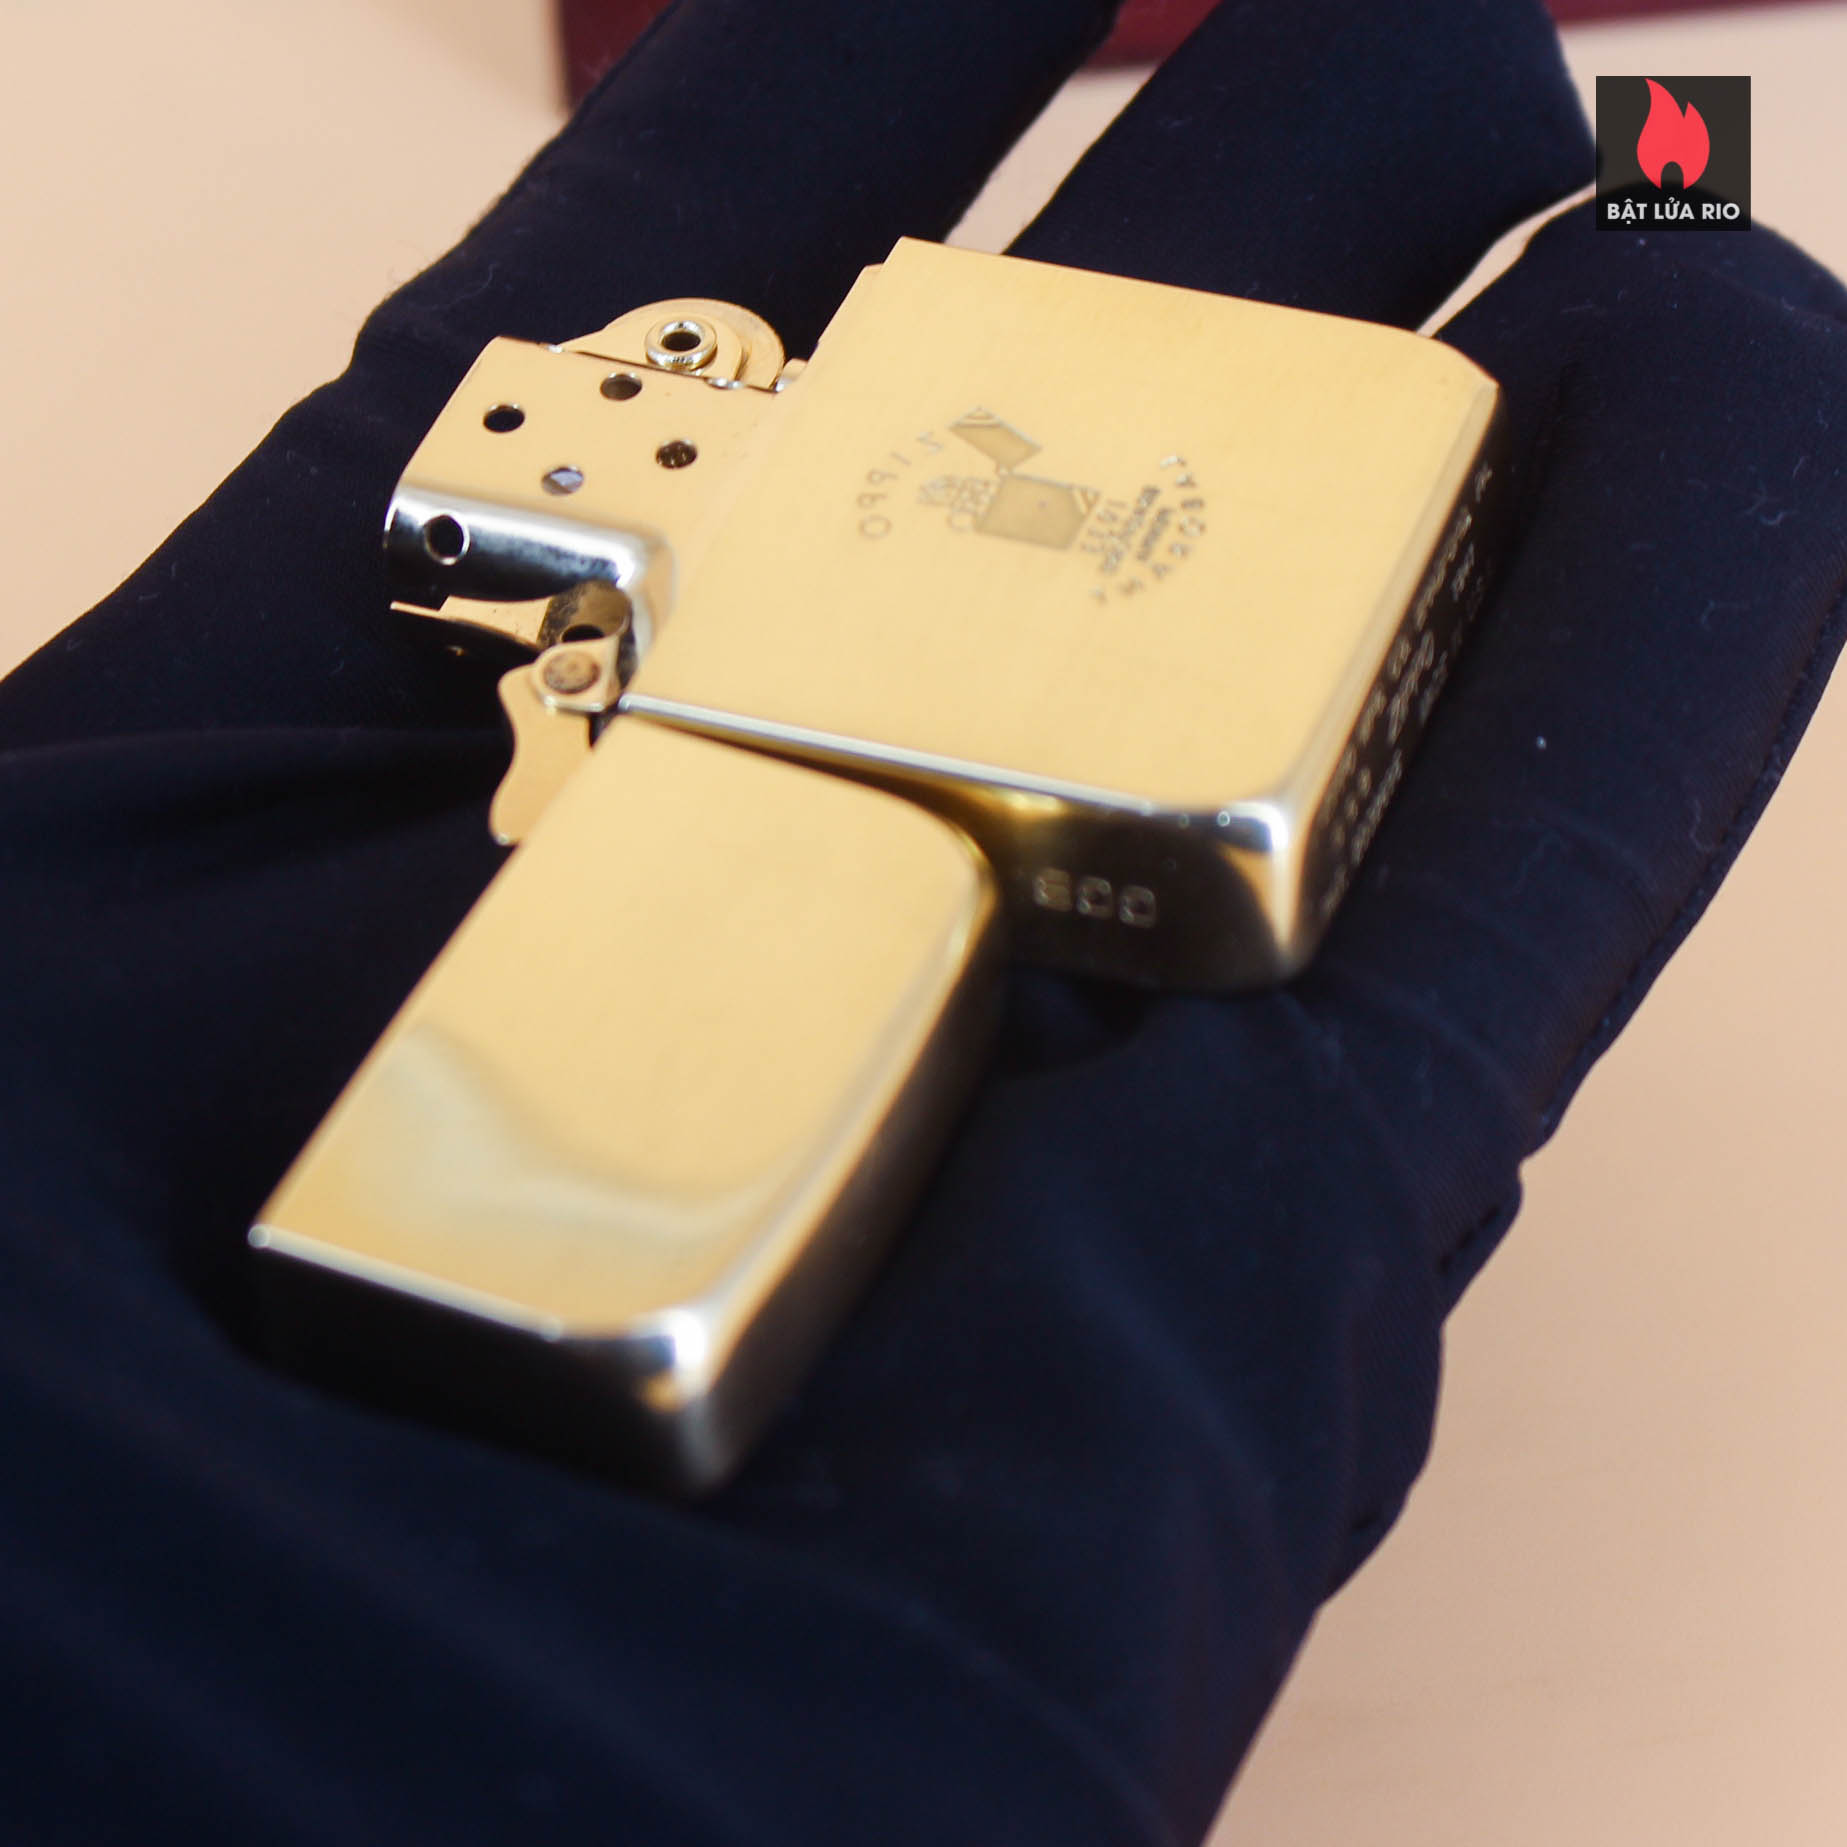 HIẾM - SIÊU PHẨM Zippo vàng nguyên khối Solid Gold 18K – Zippo Signet Lighter 18K Solid Gold - GGB 1941 - Giới hạn 300 chiếc trên toàn thế giới - Limited 24/300 5